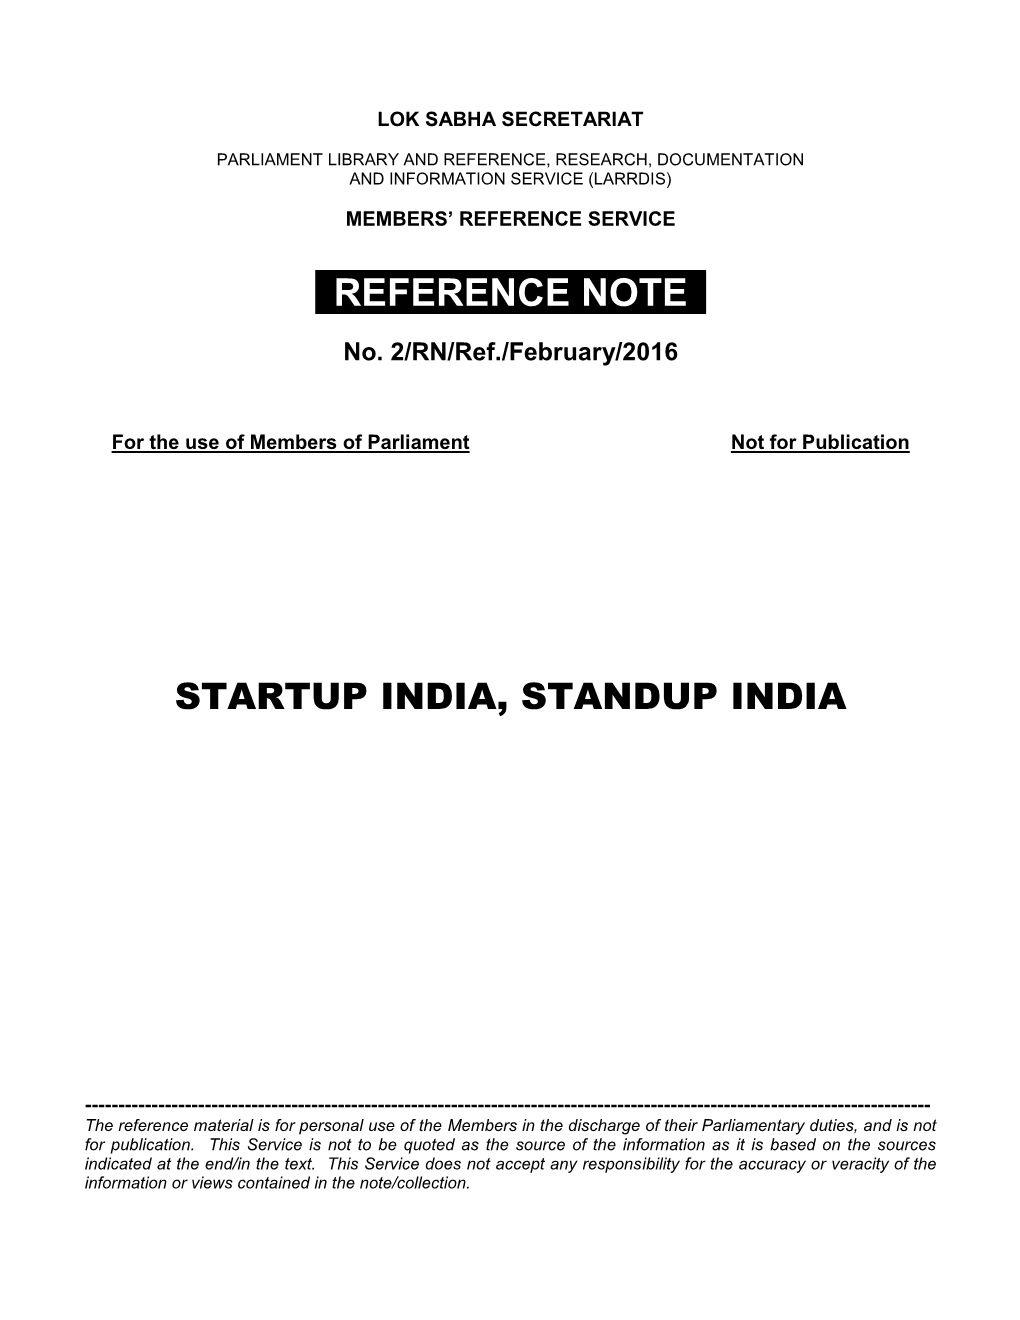 Startup India, Standup India